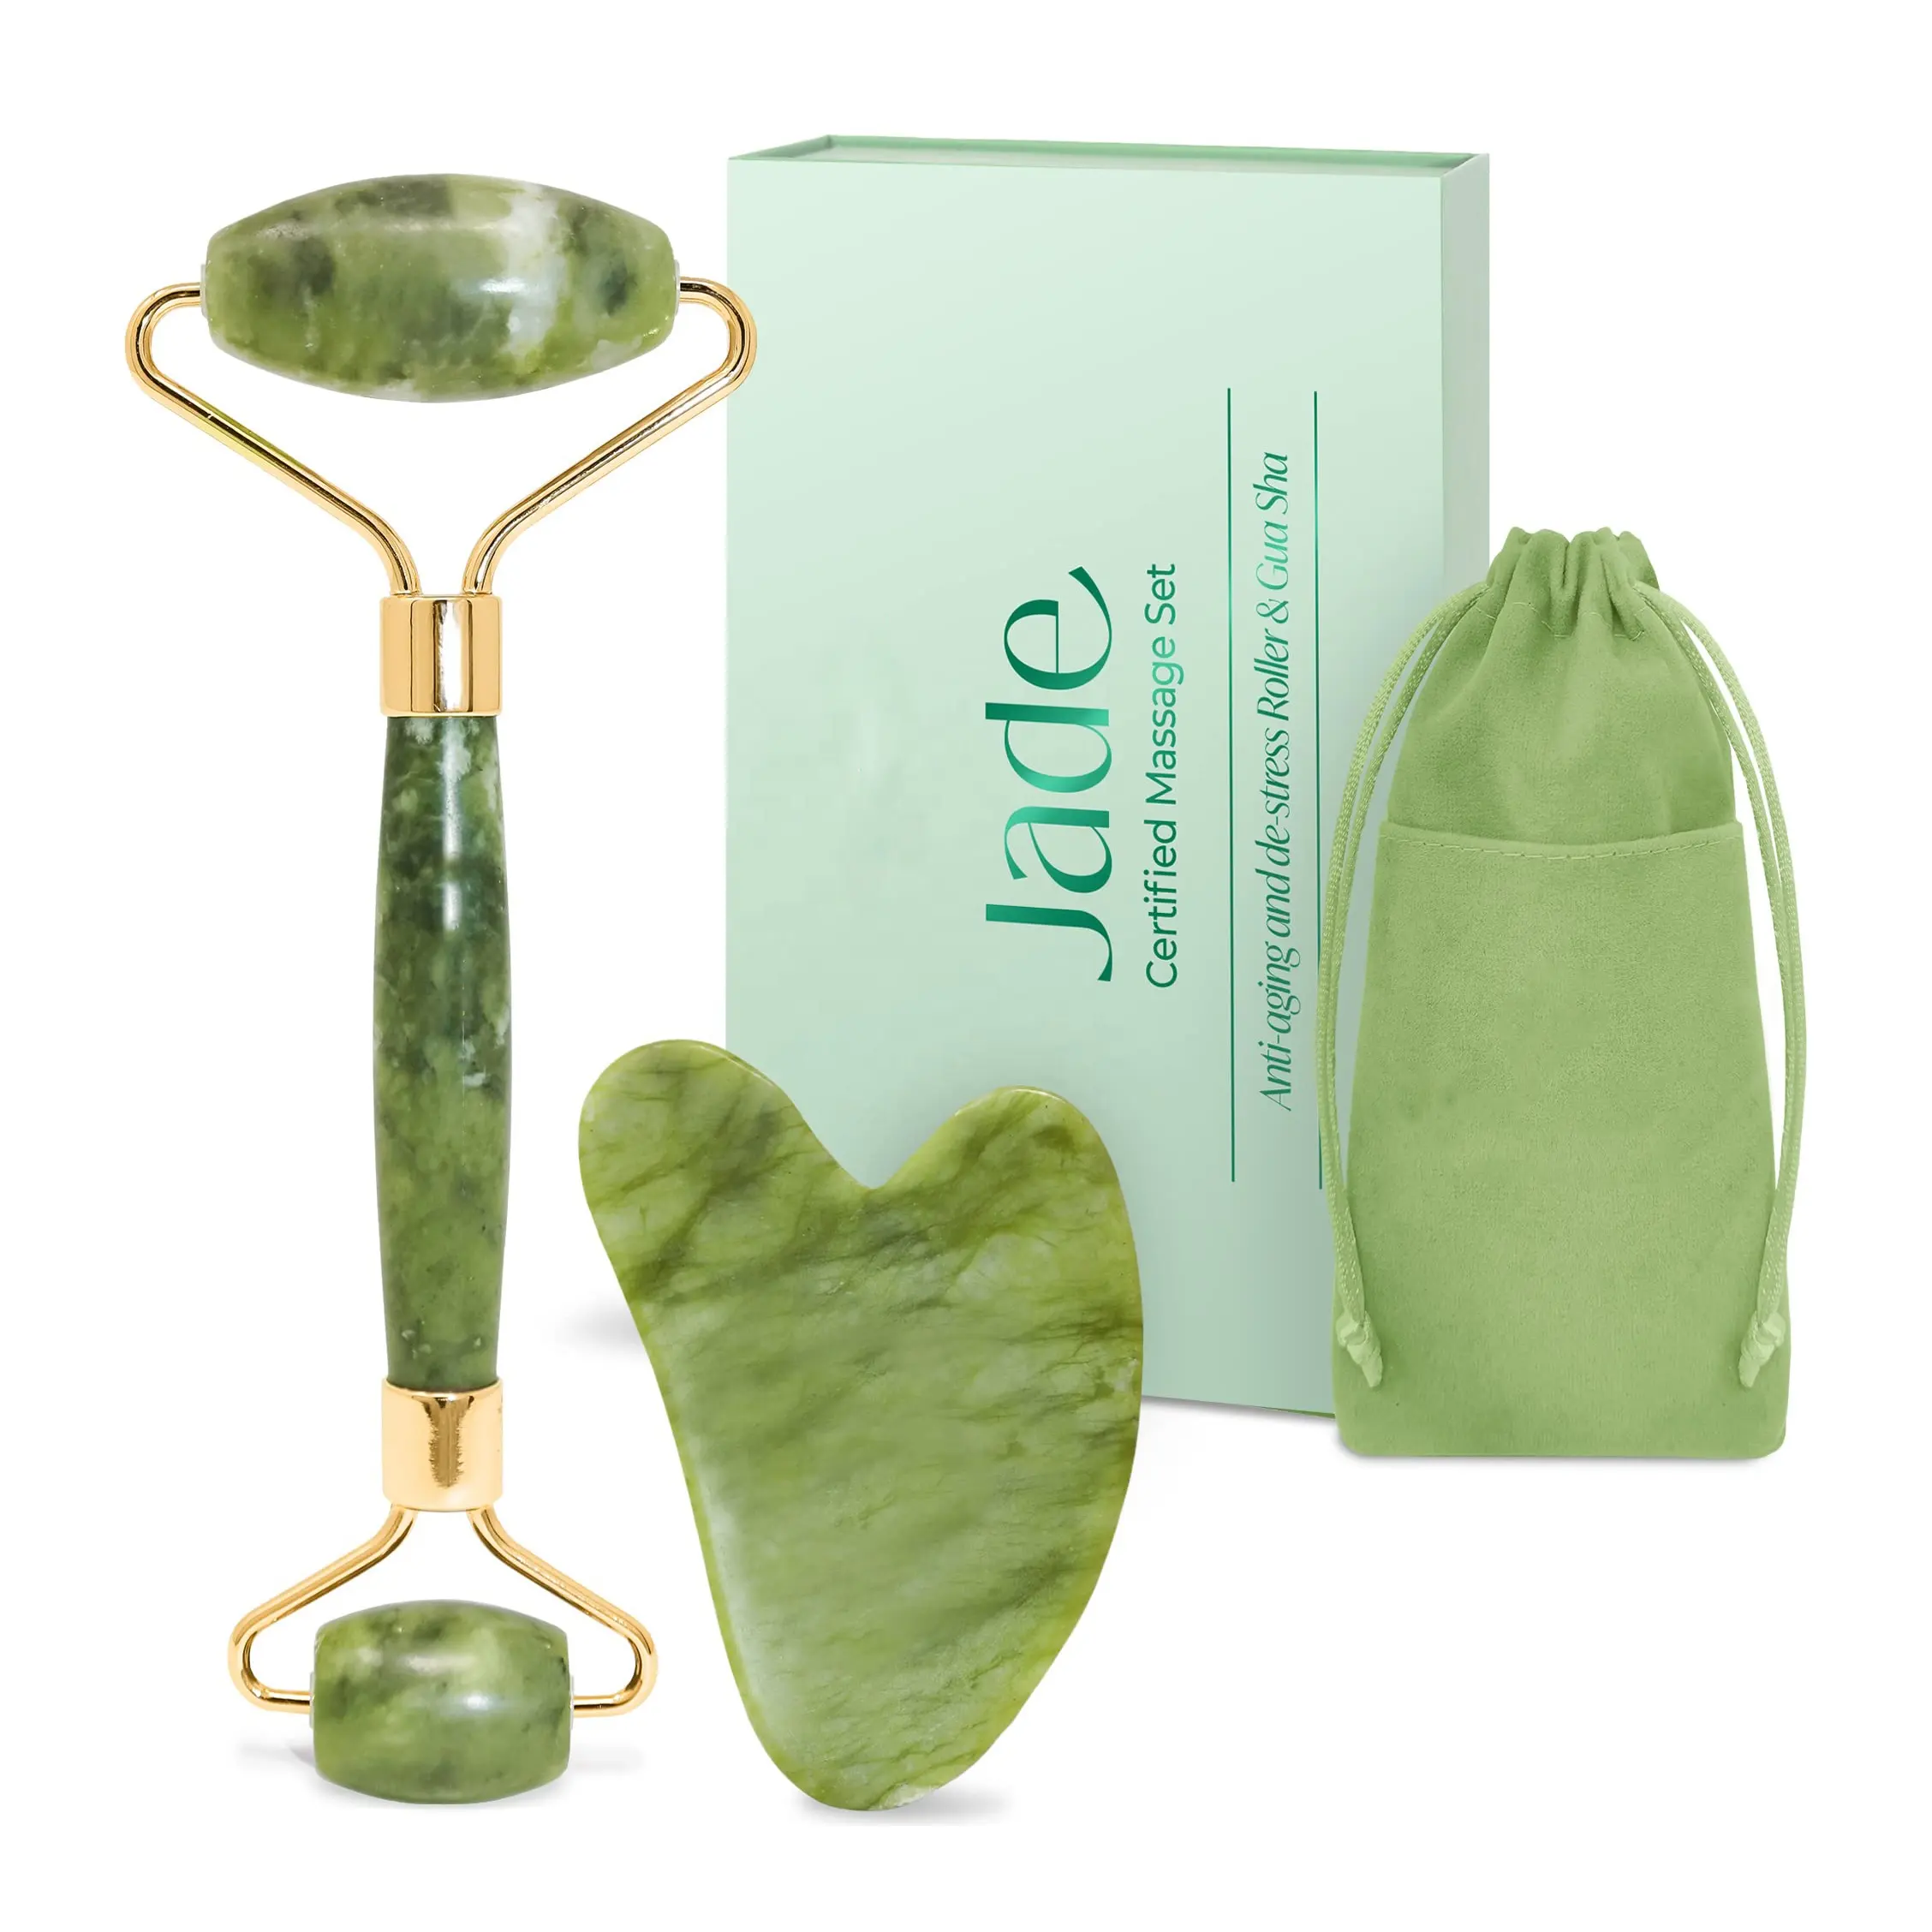 Venta caliente OEM Etiqueta Privada rodillo gua sha conjunto natural antienvejecimiento rodillo de jade gua sha herramienta facial masaje facial de jade gua sha